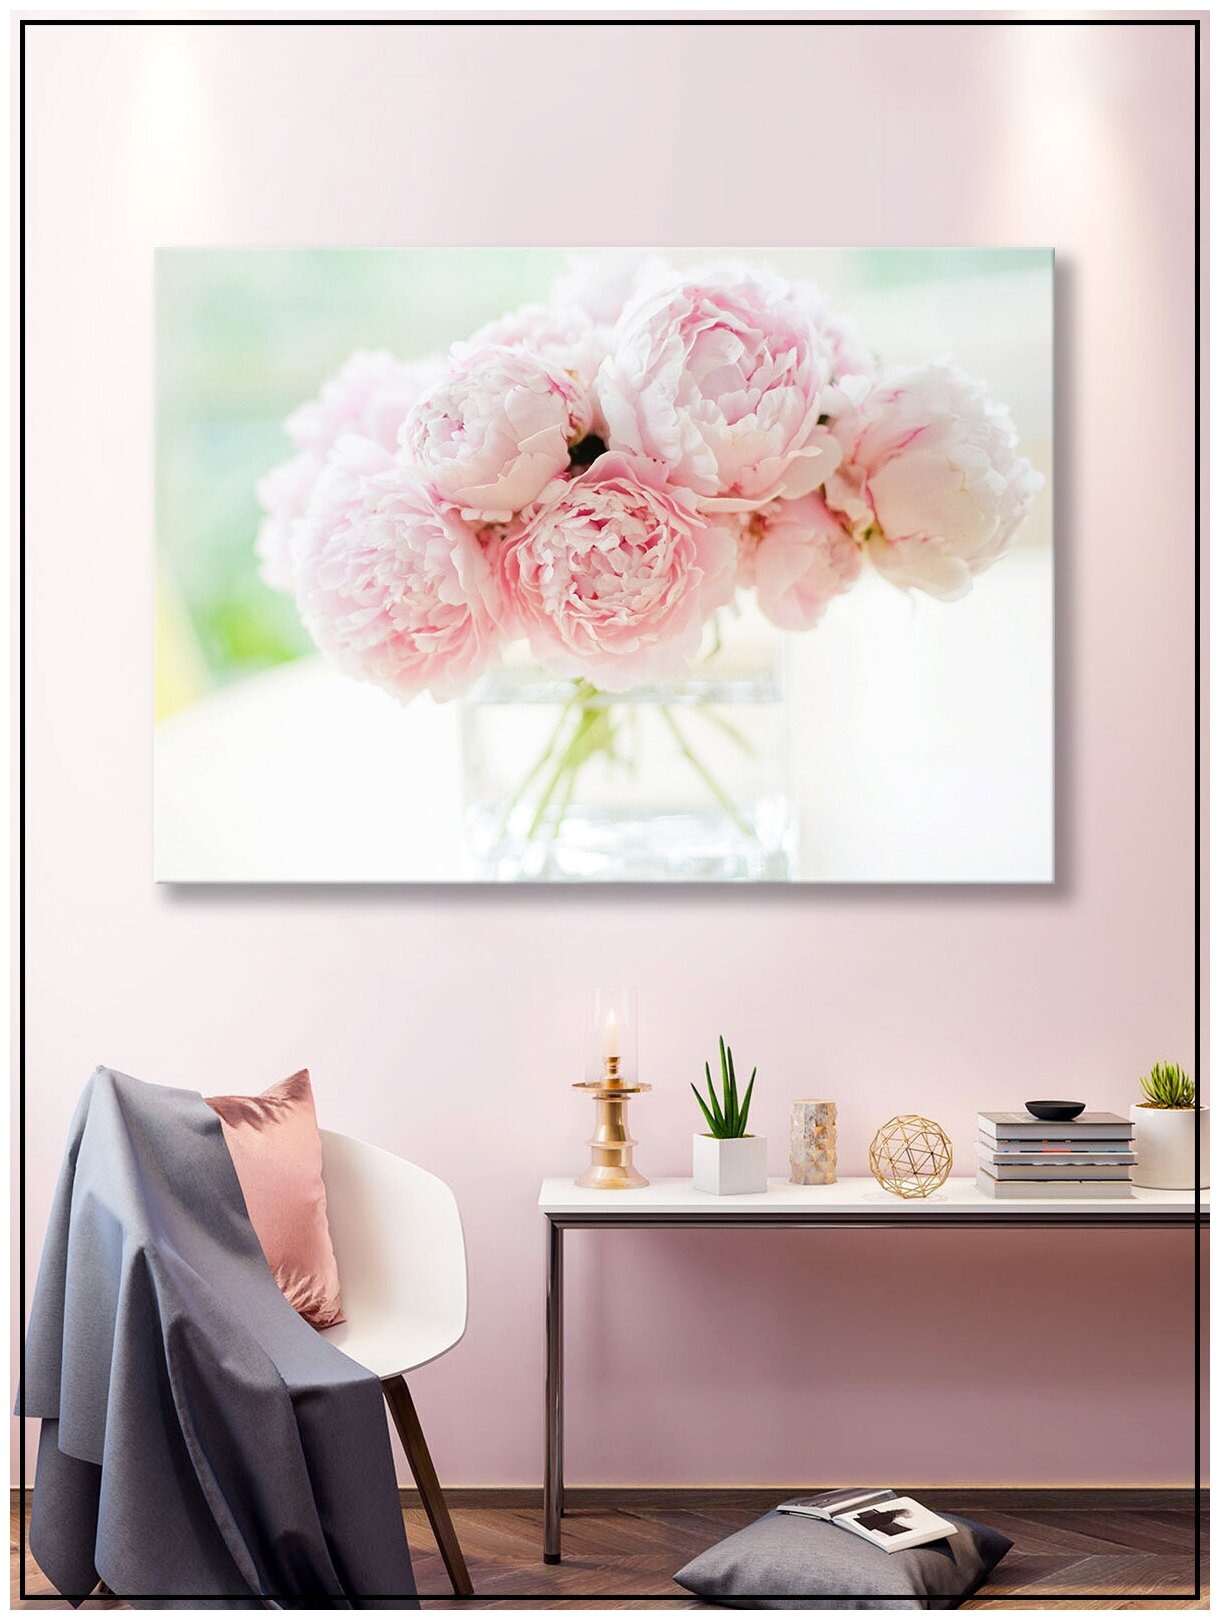 Картина для интерьера на натуральном хлопковом холсте "Букет розовых пионов", 38*55см, холст на подрамнике, картина в подарок для дома